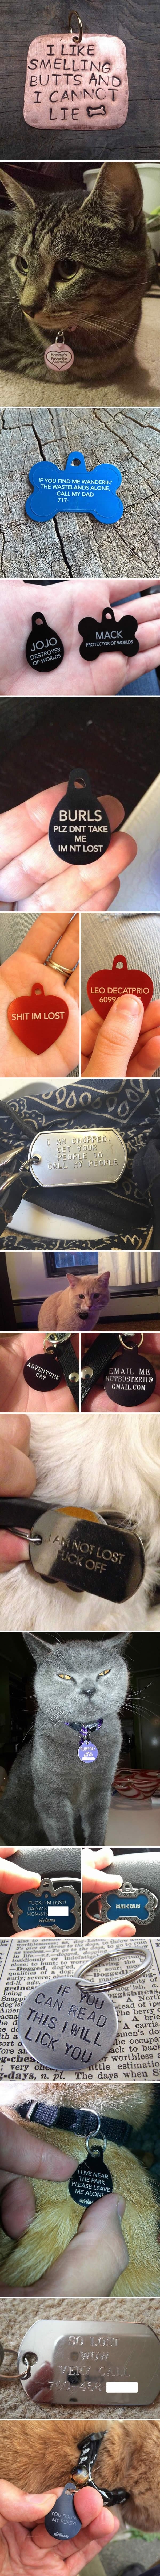 Hilarious pet collar tags